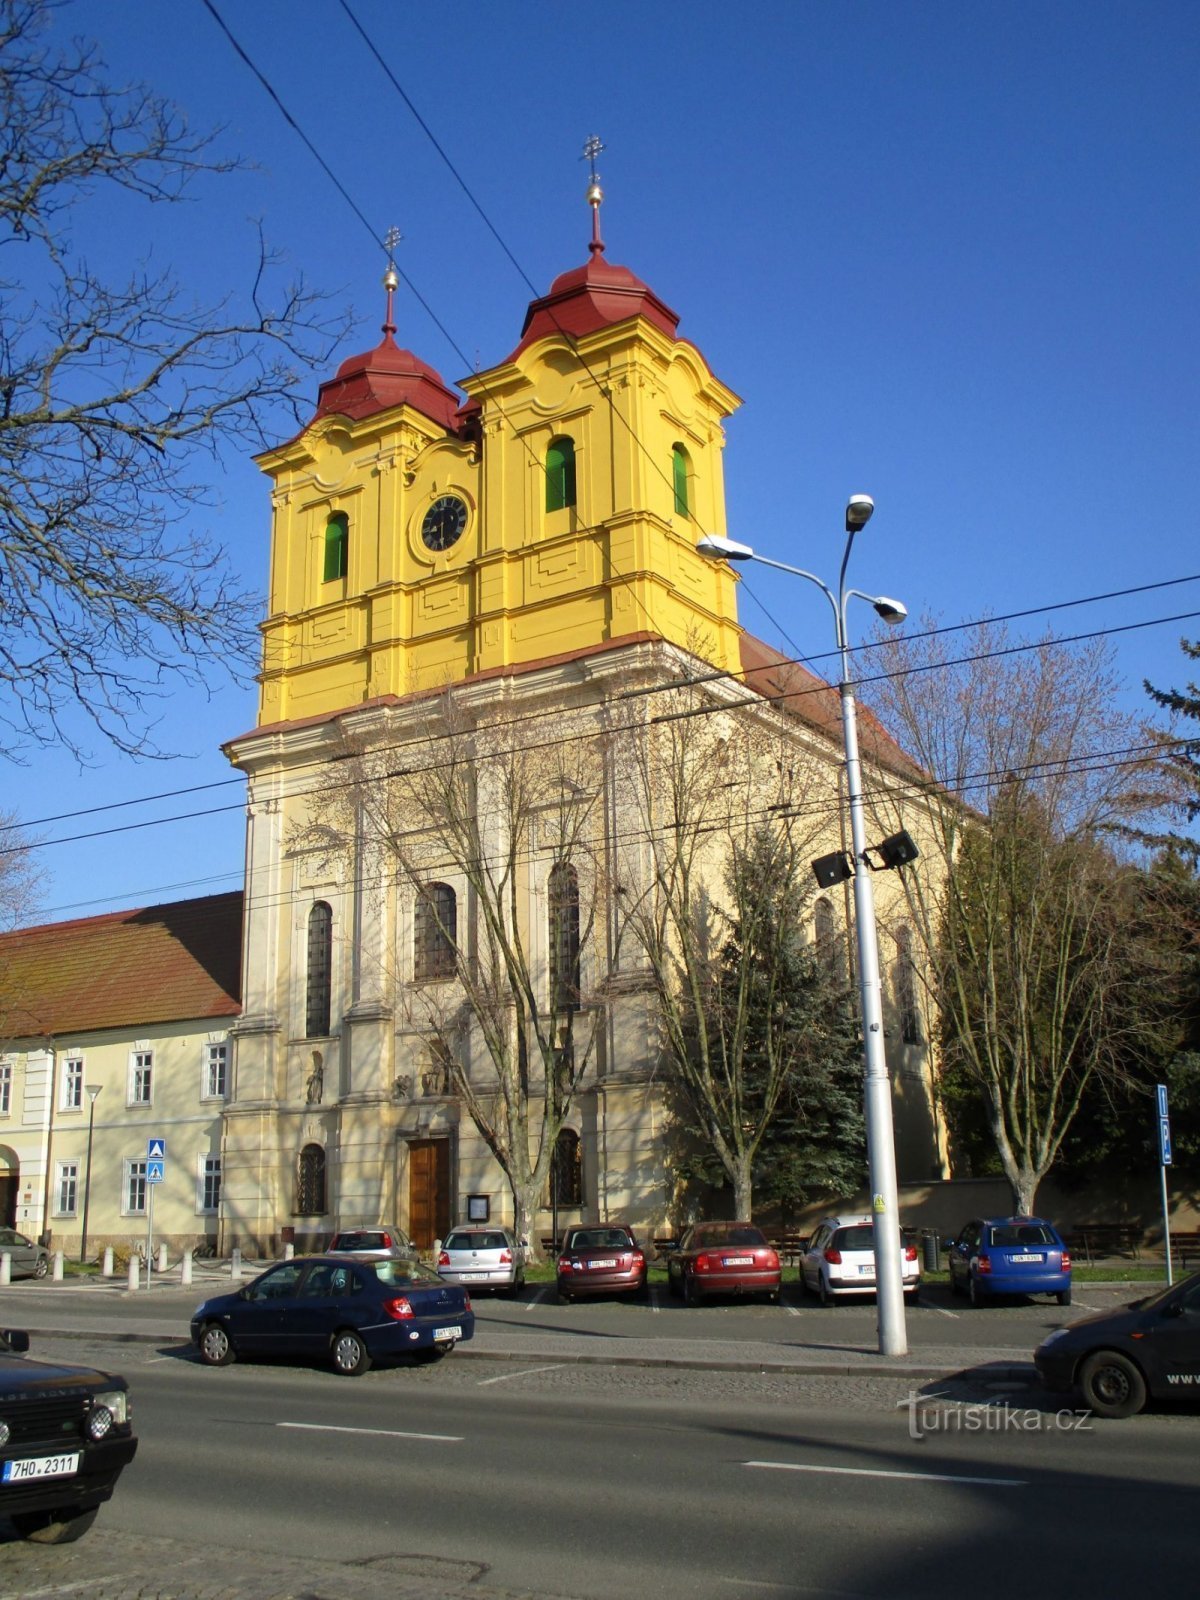 Chiesa di S. Anny (Hradec Králové, 5.4.2020 aprile XNUMX)